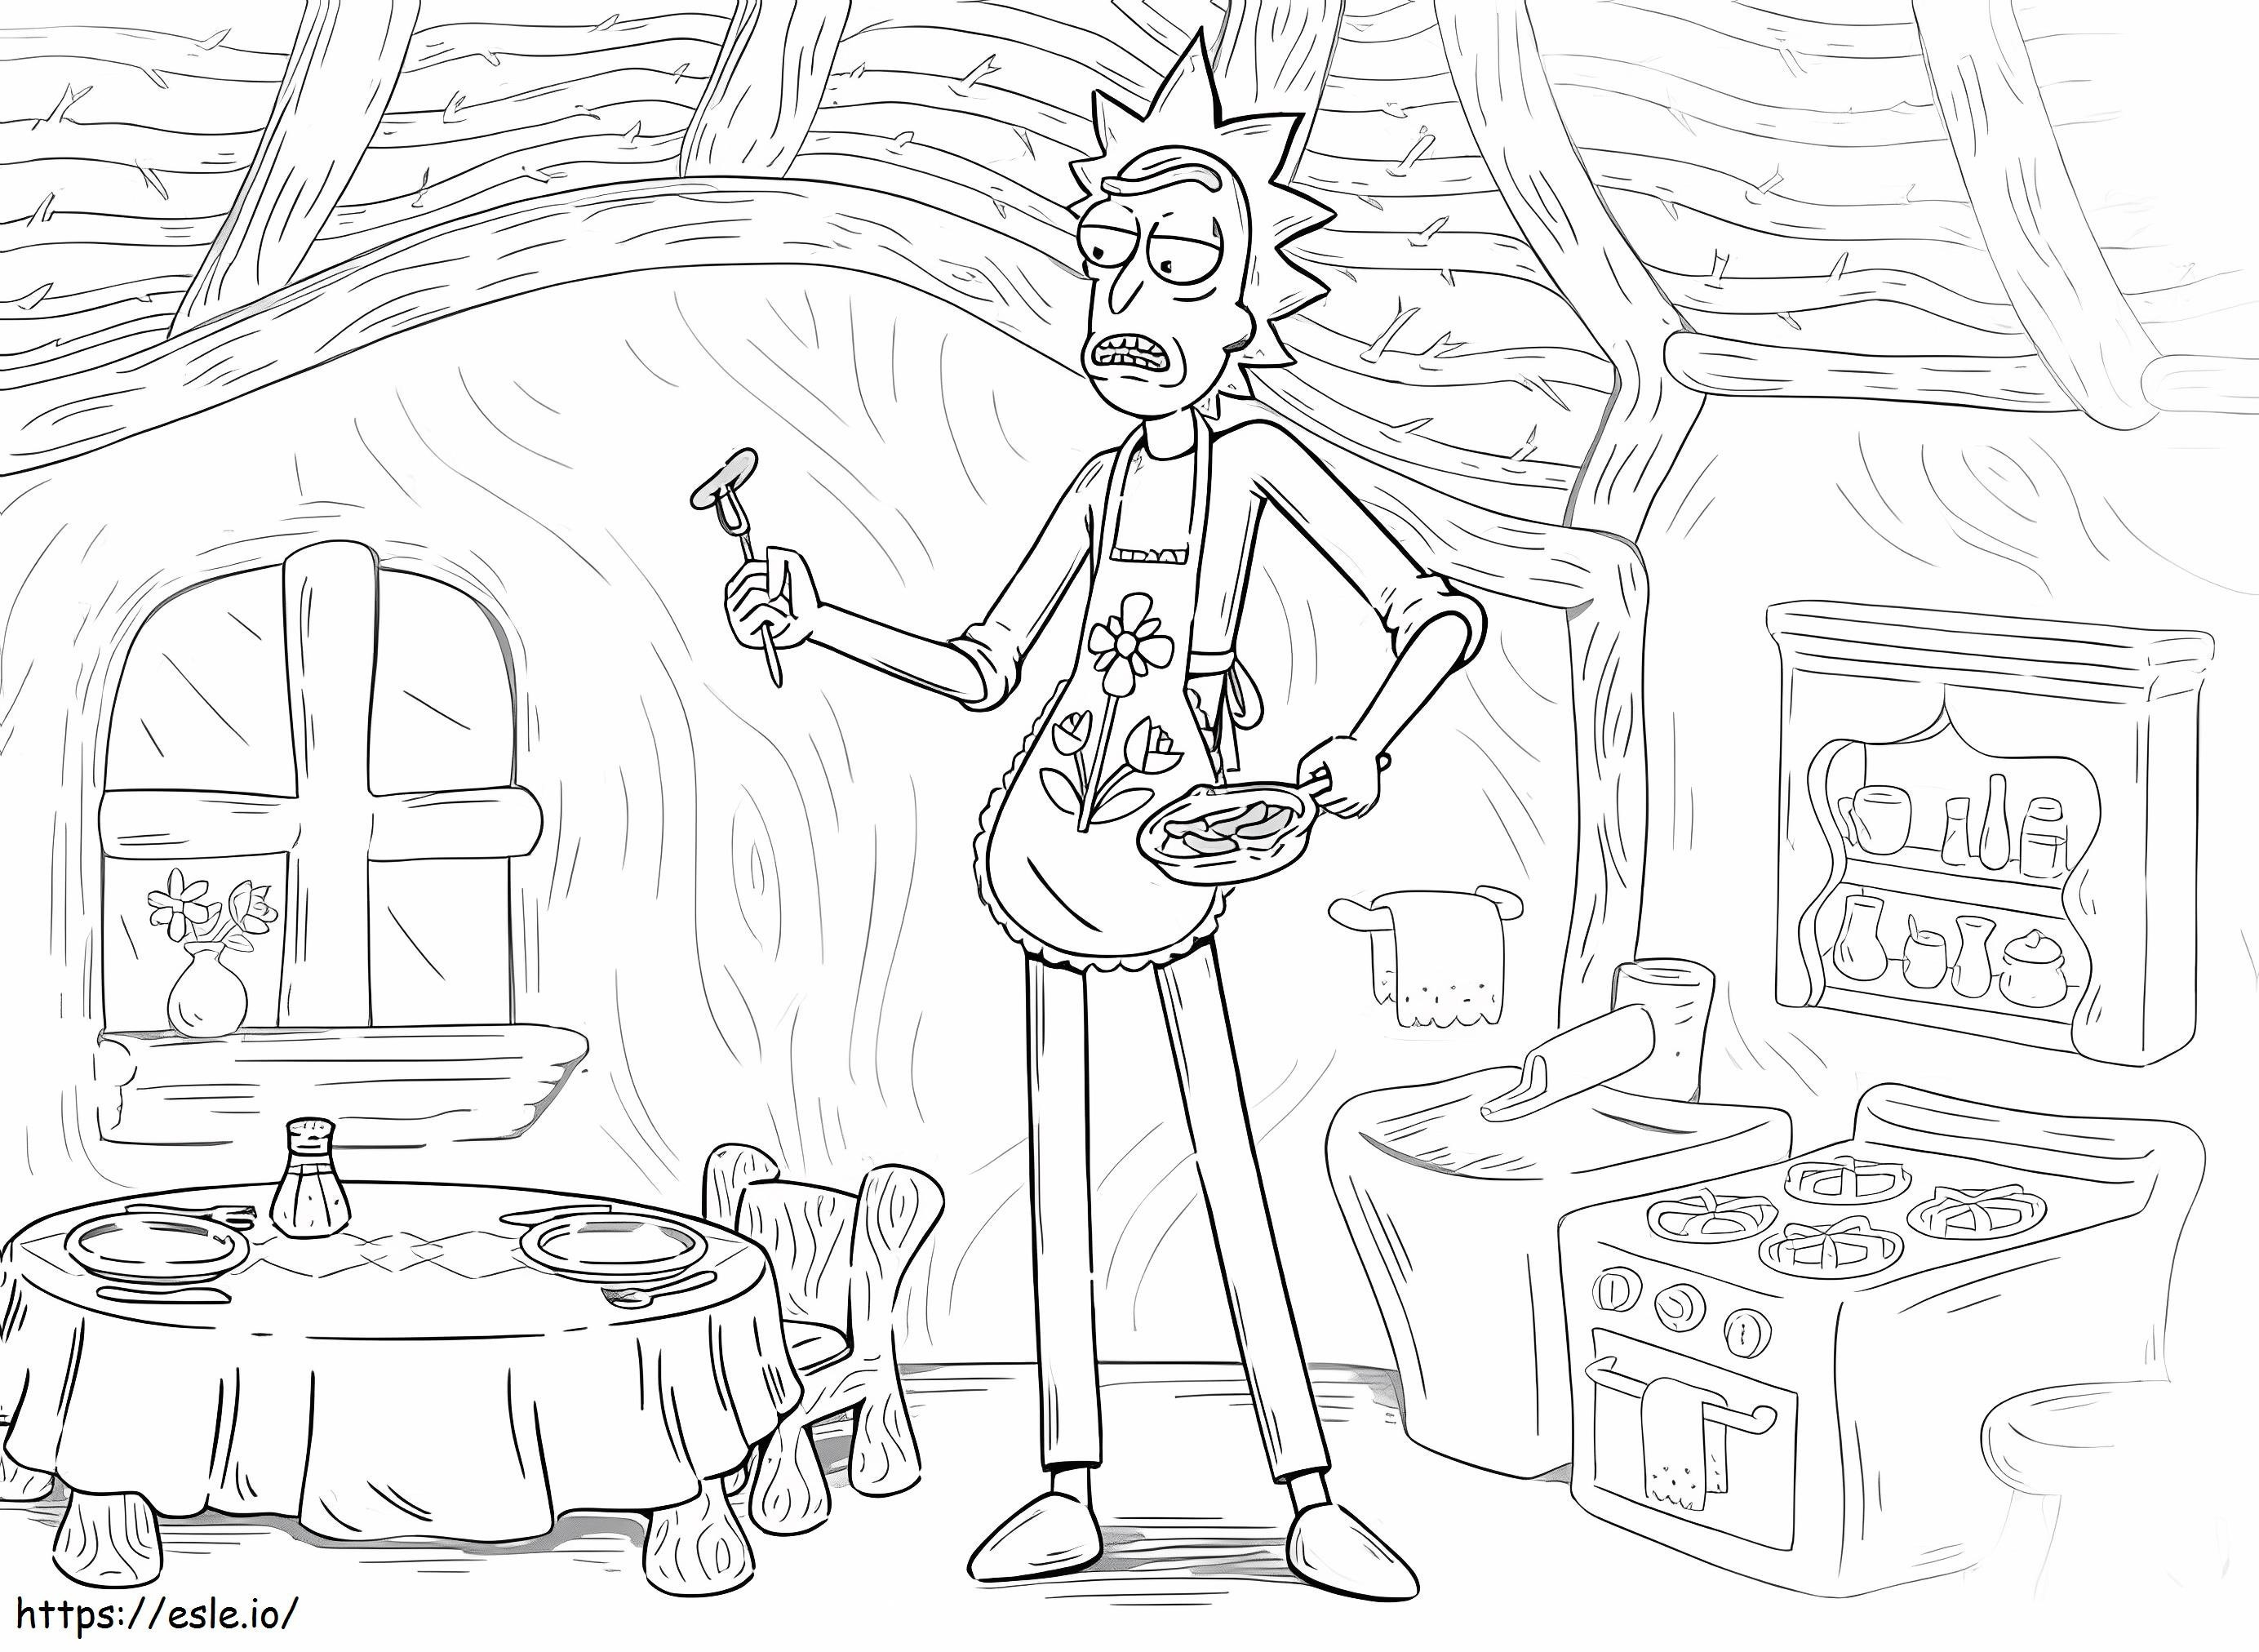 Rick in cucina da colorare